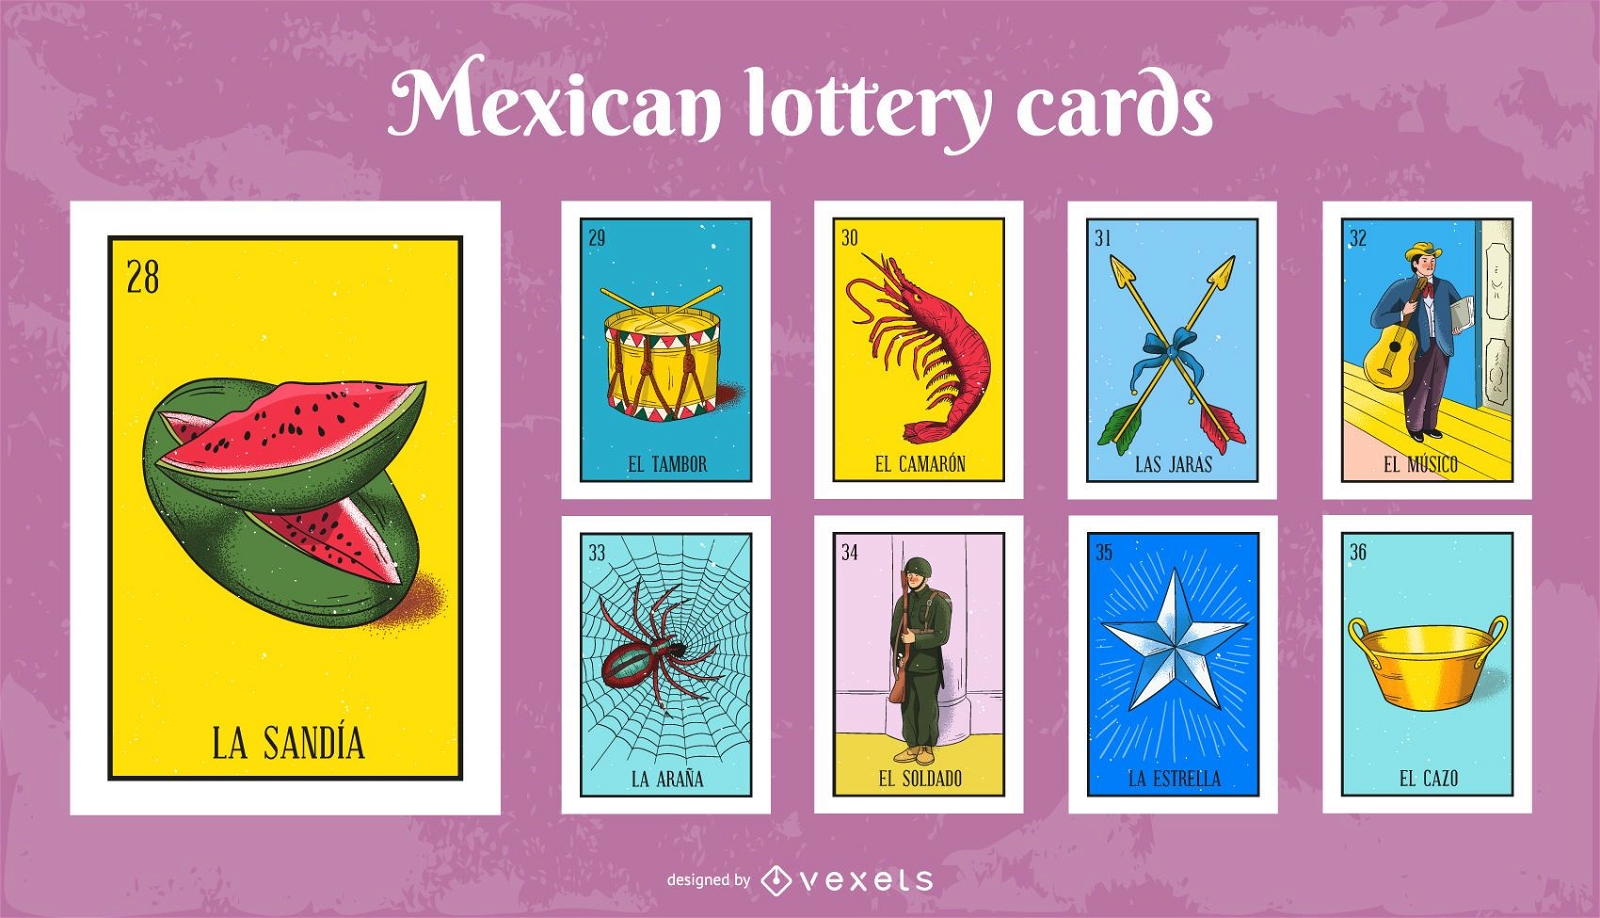 Juego de cartas de lotería mexicana